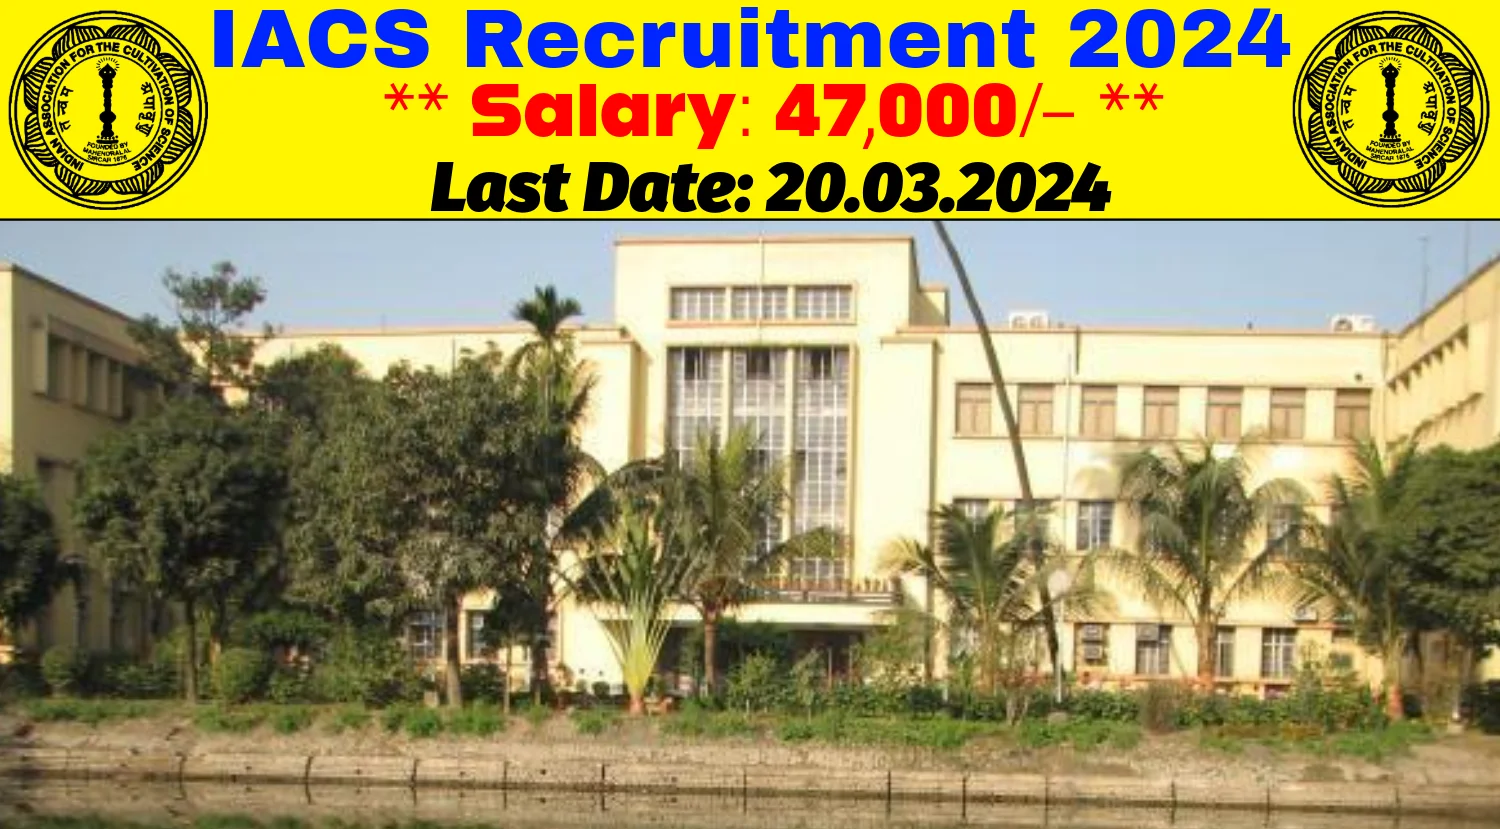 IACS Recruitment 2024